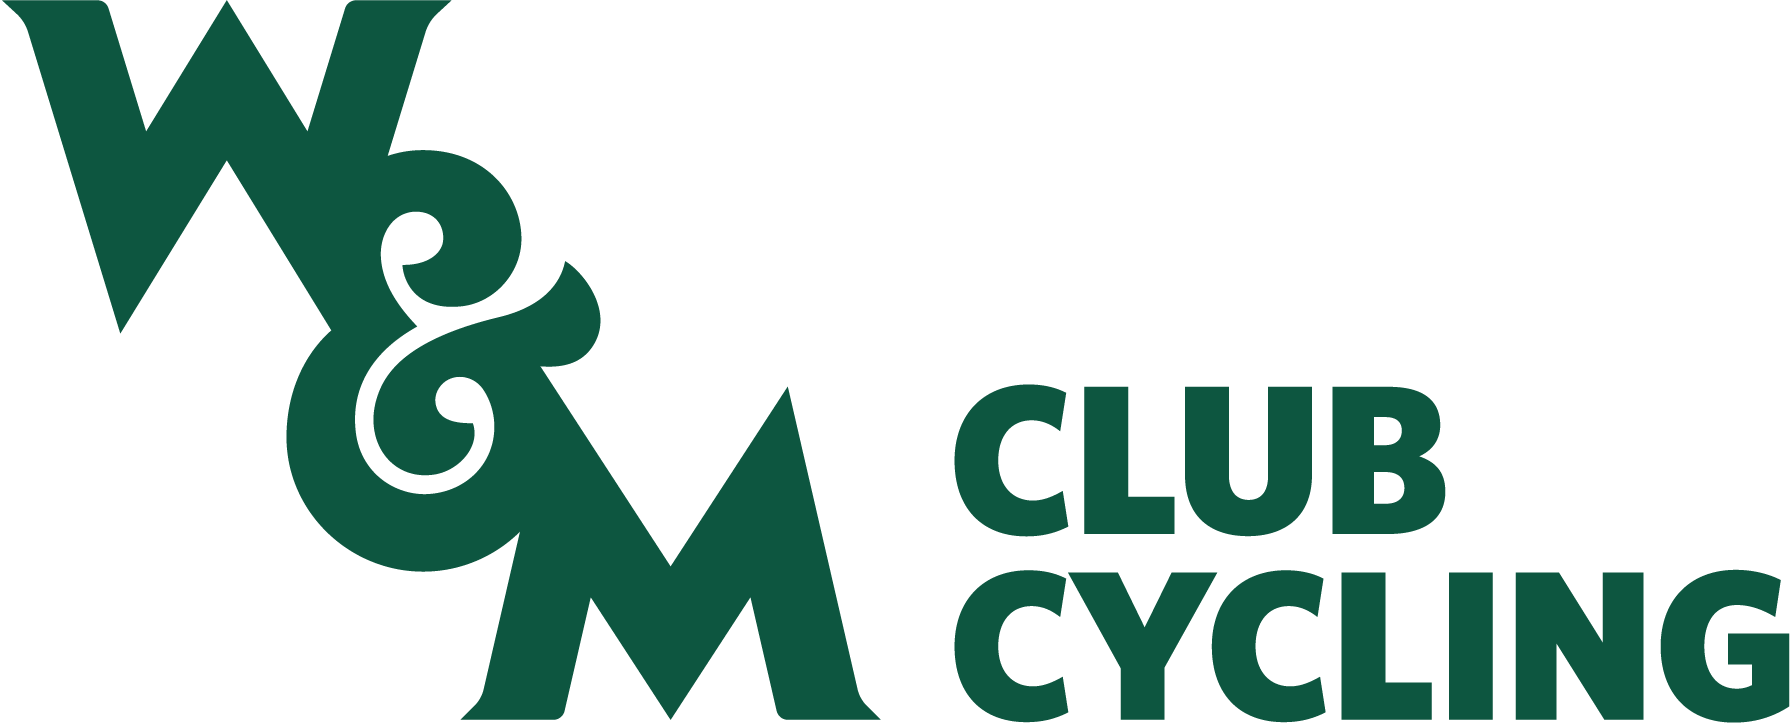 Cycling Club Logo